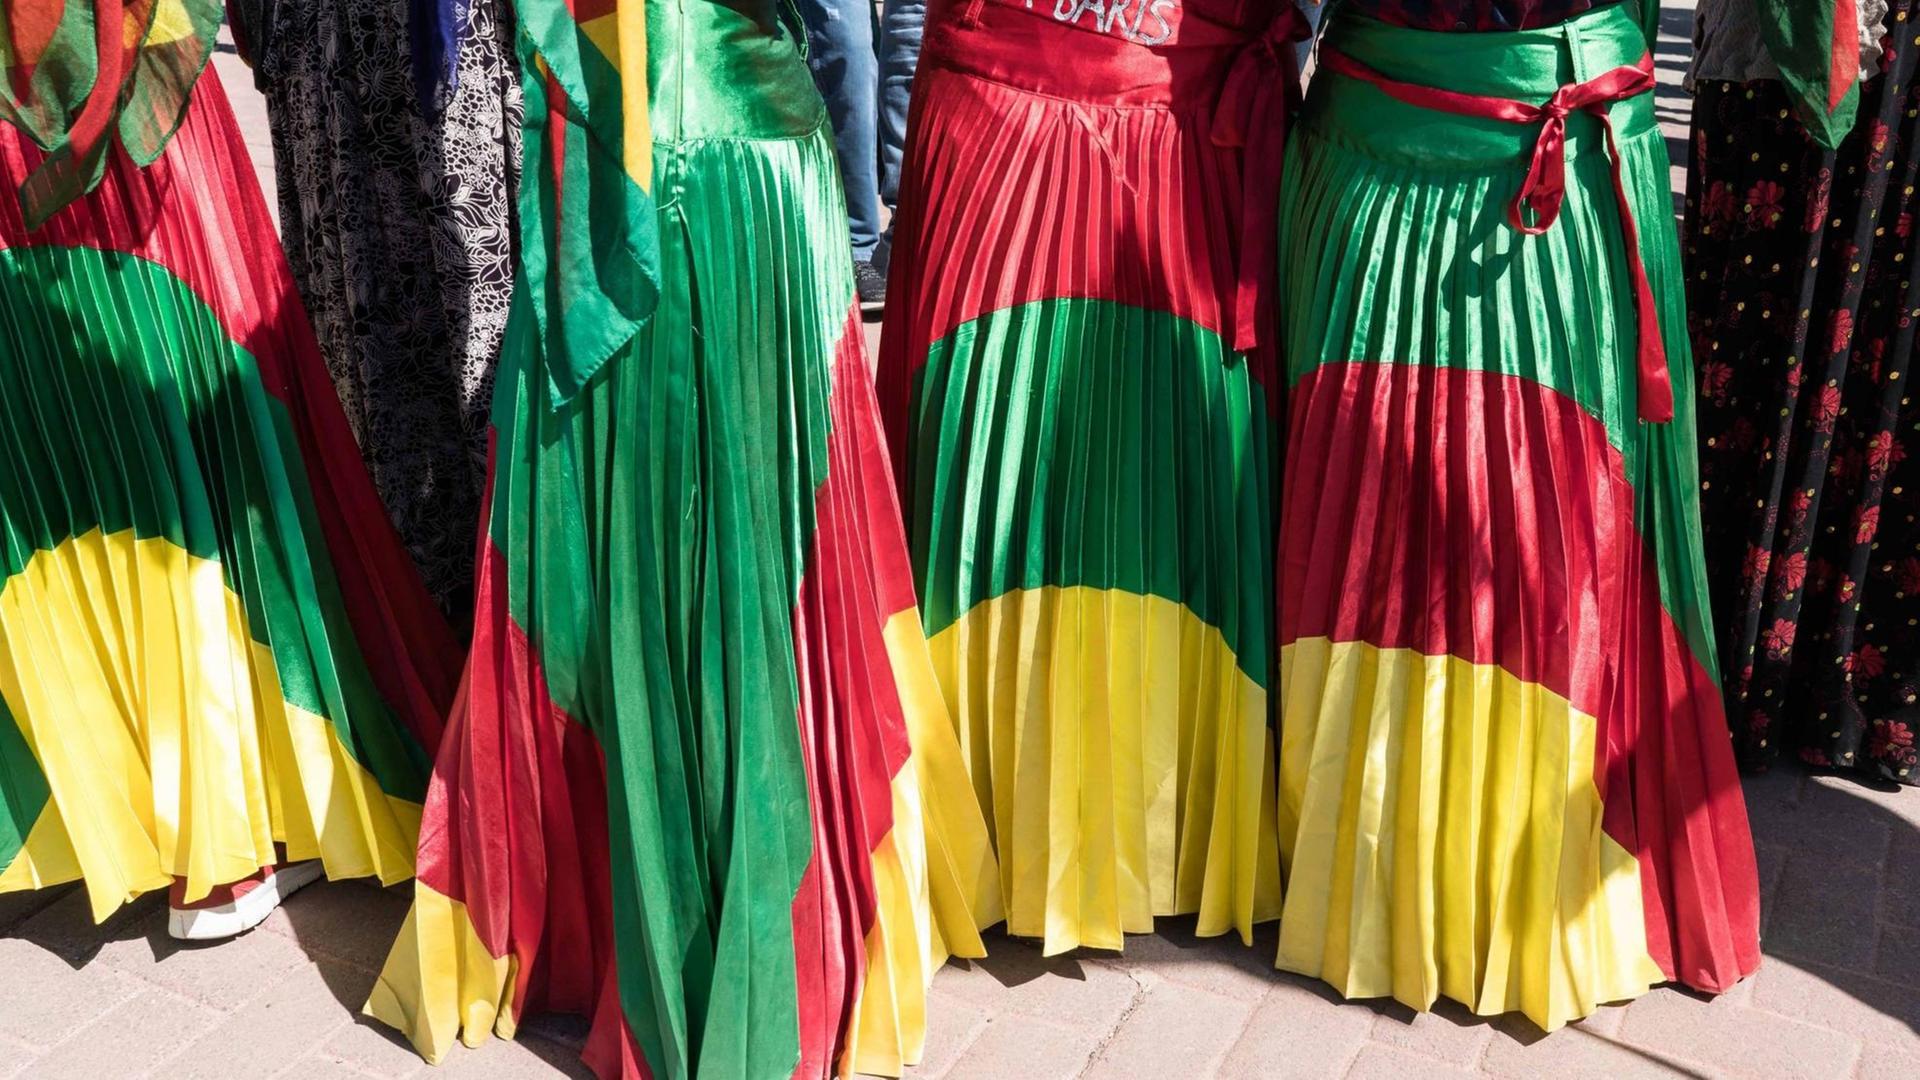 Röcke in den kurdischen Landesfarben